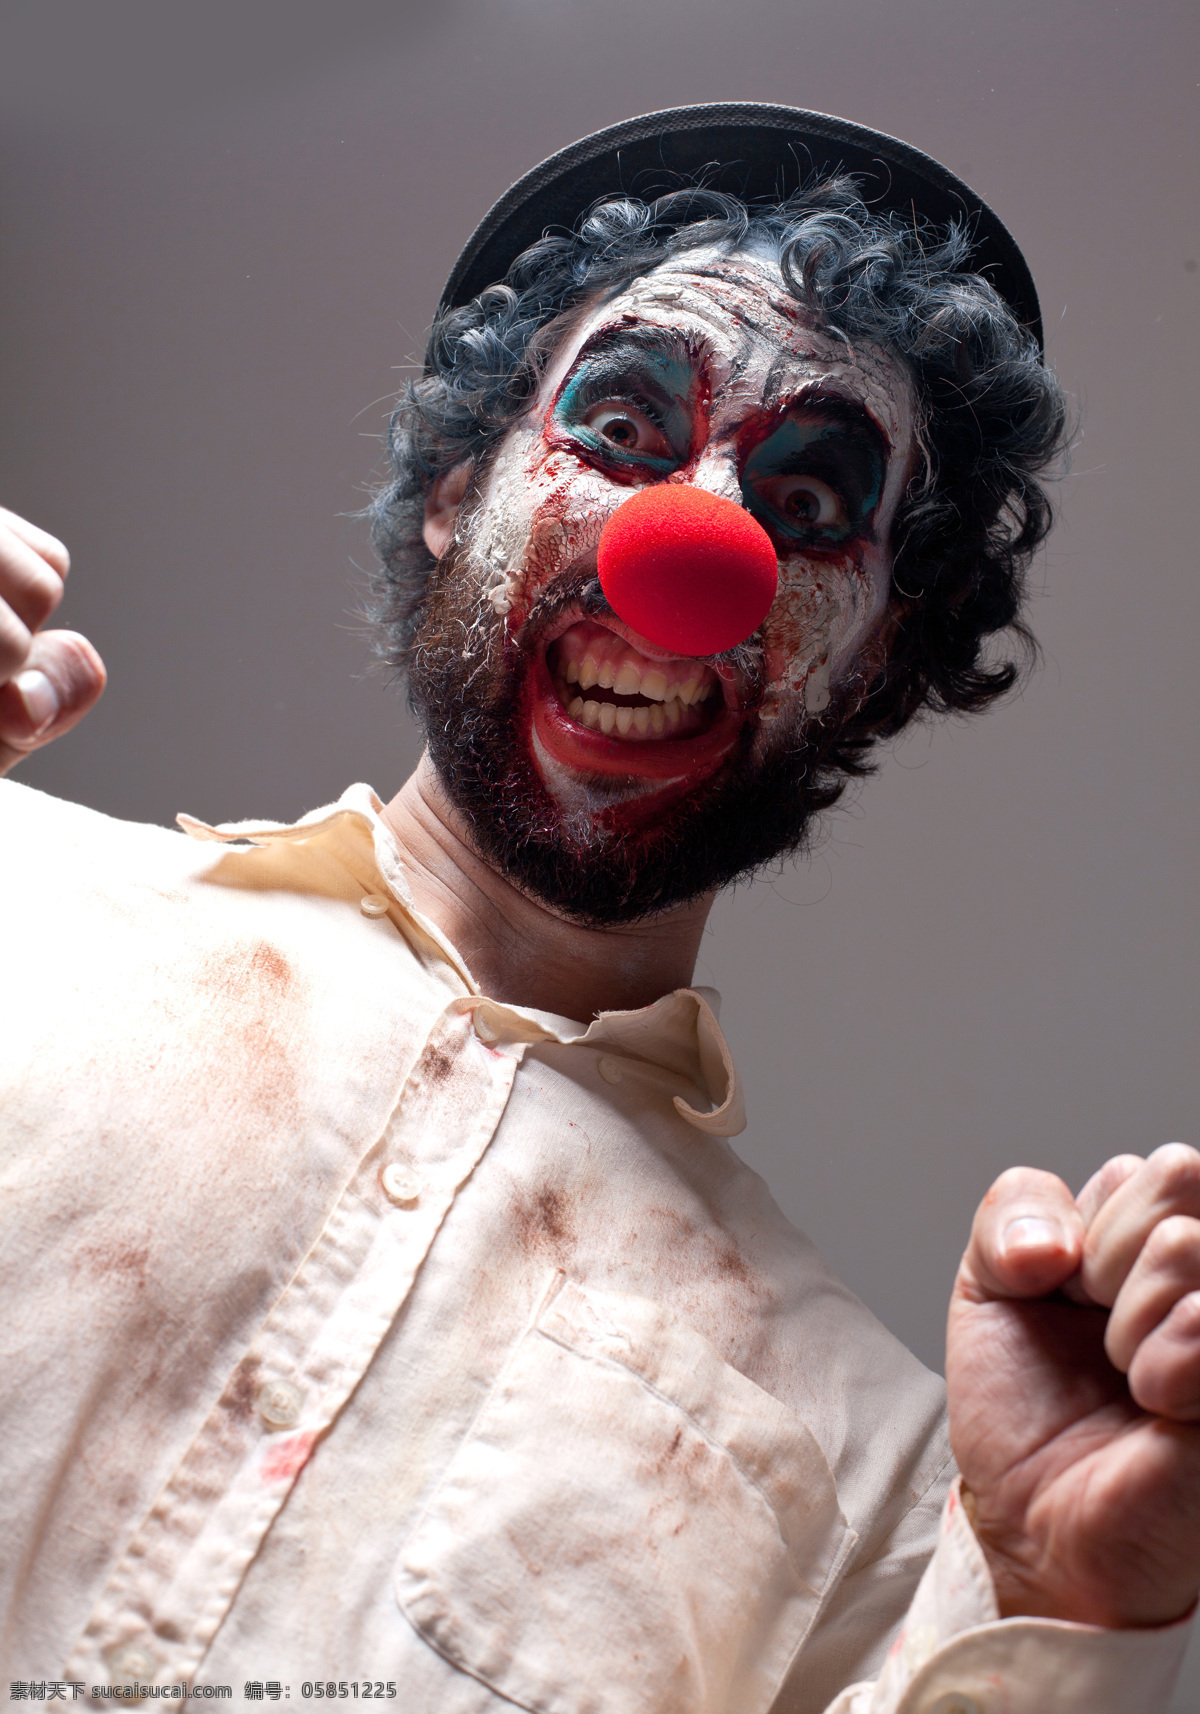 恐怖 造型 小丑 马戏团小丑 滑稽表演 滑稽演员 马戏团演员 其他人物 人物图片